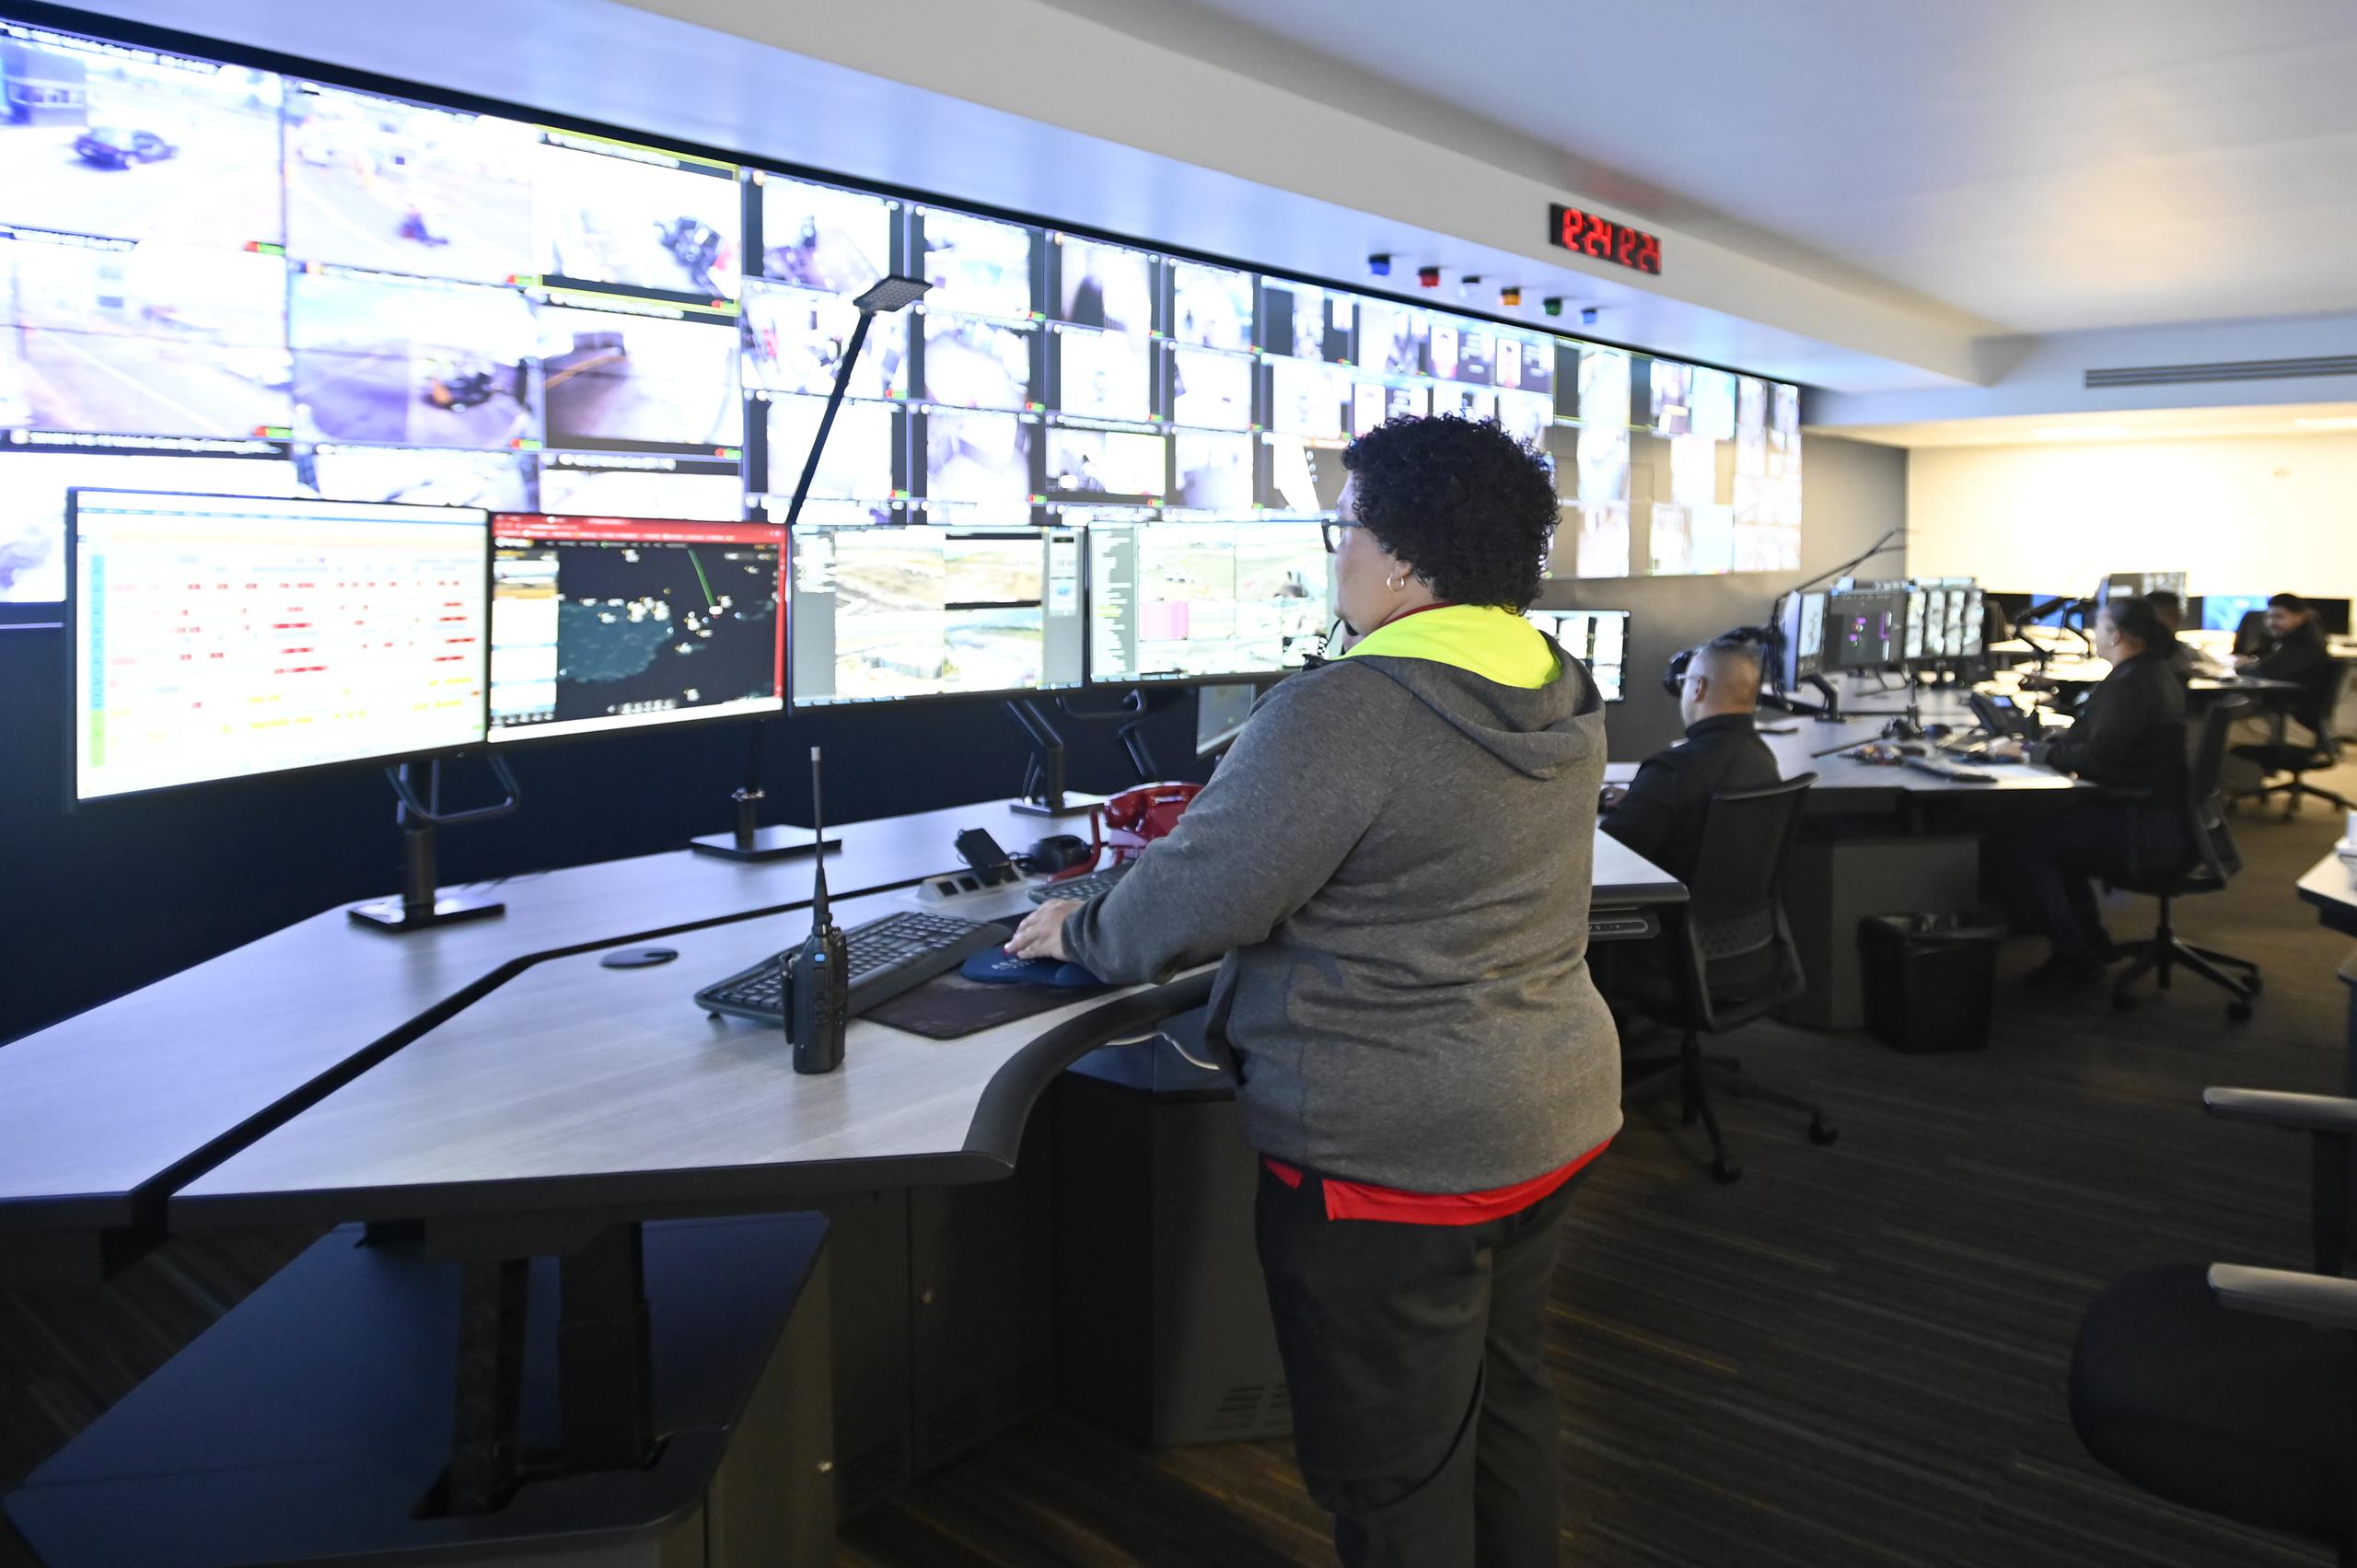 El centro de control cuenta con un sinnúmero de pantallas desde donde se puede monitorear todo tipo de actividad a través de toda la terminal aérea, a través de más de 1,500 cámaras de seguridad.